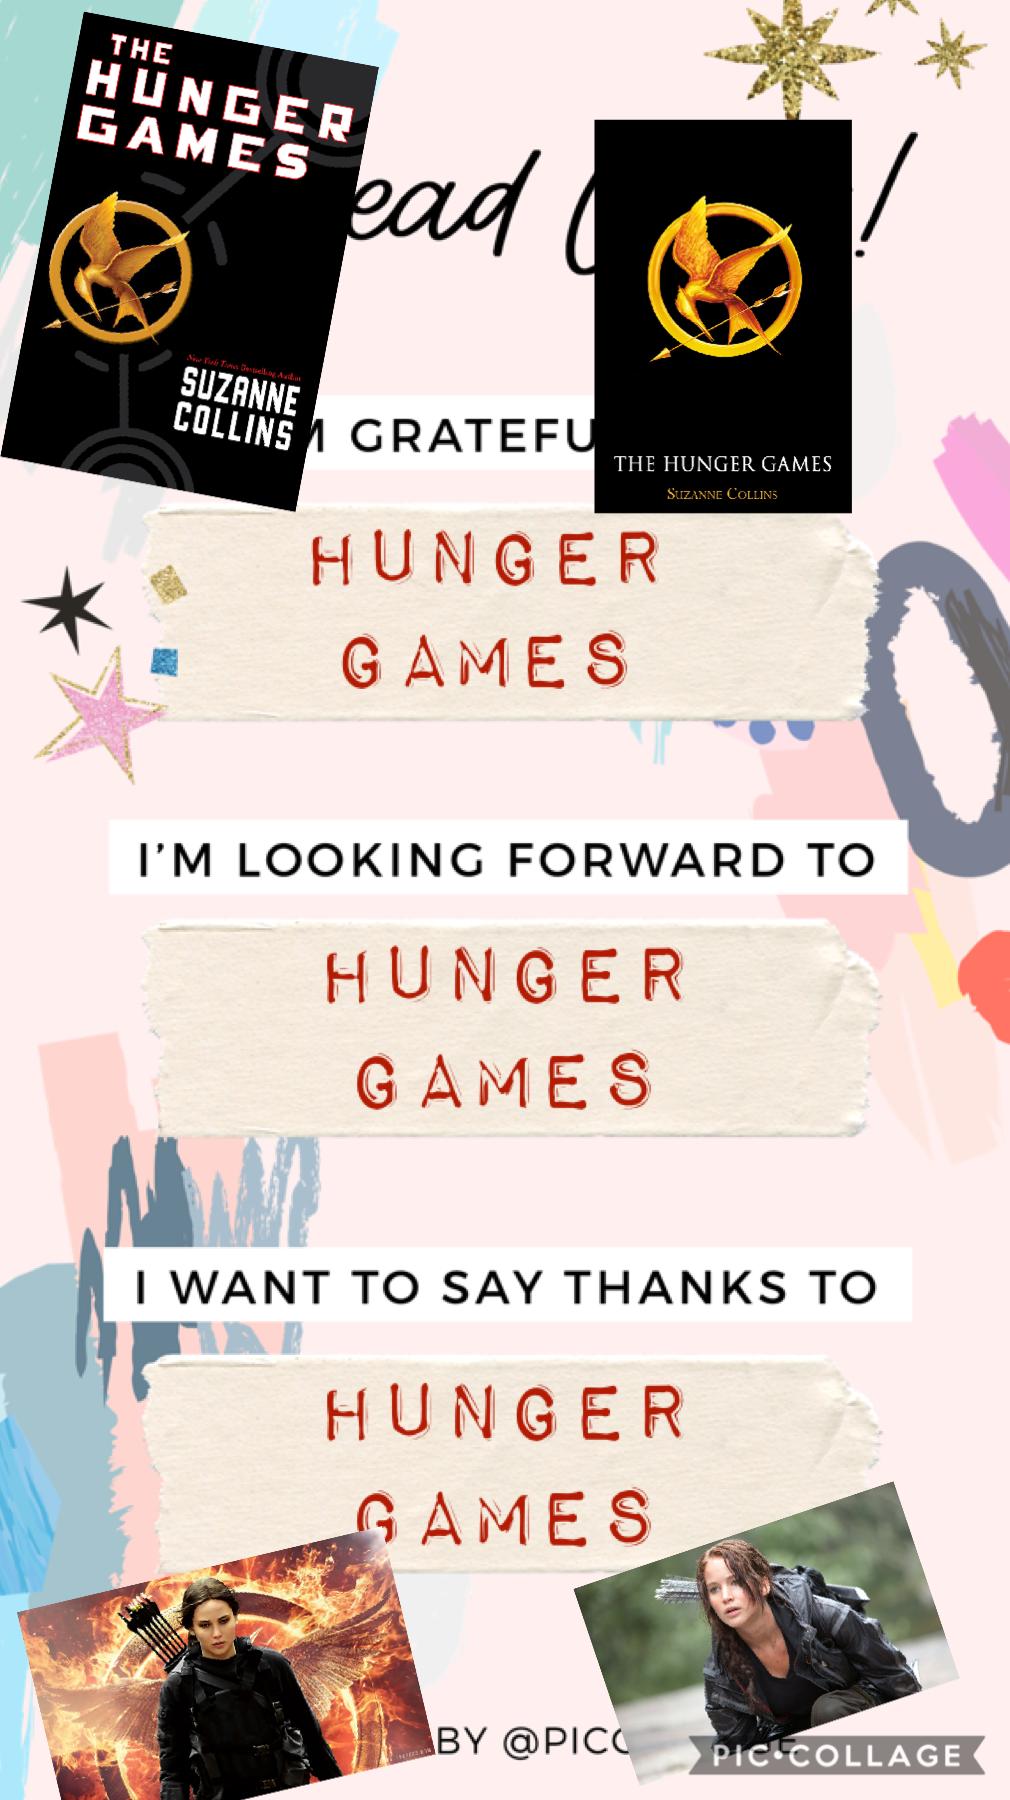 Hunger games, I am grateful for it.😂❤️